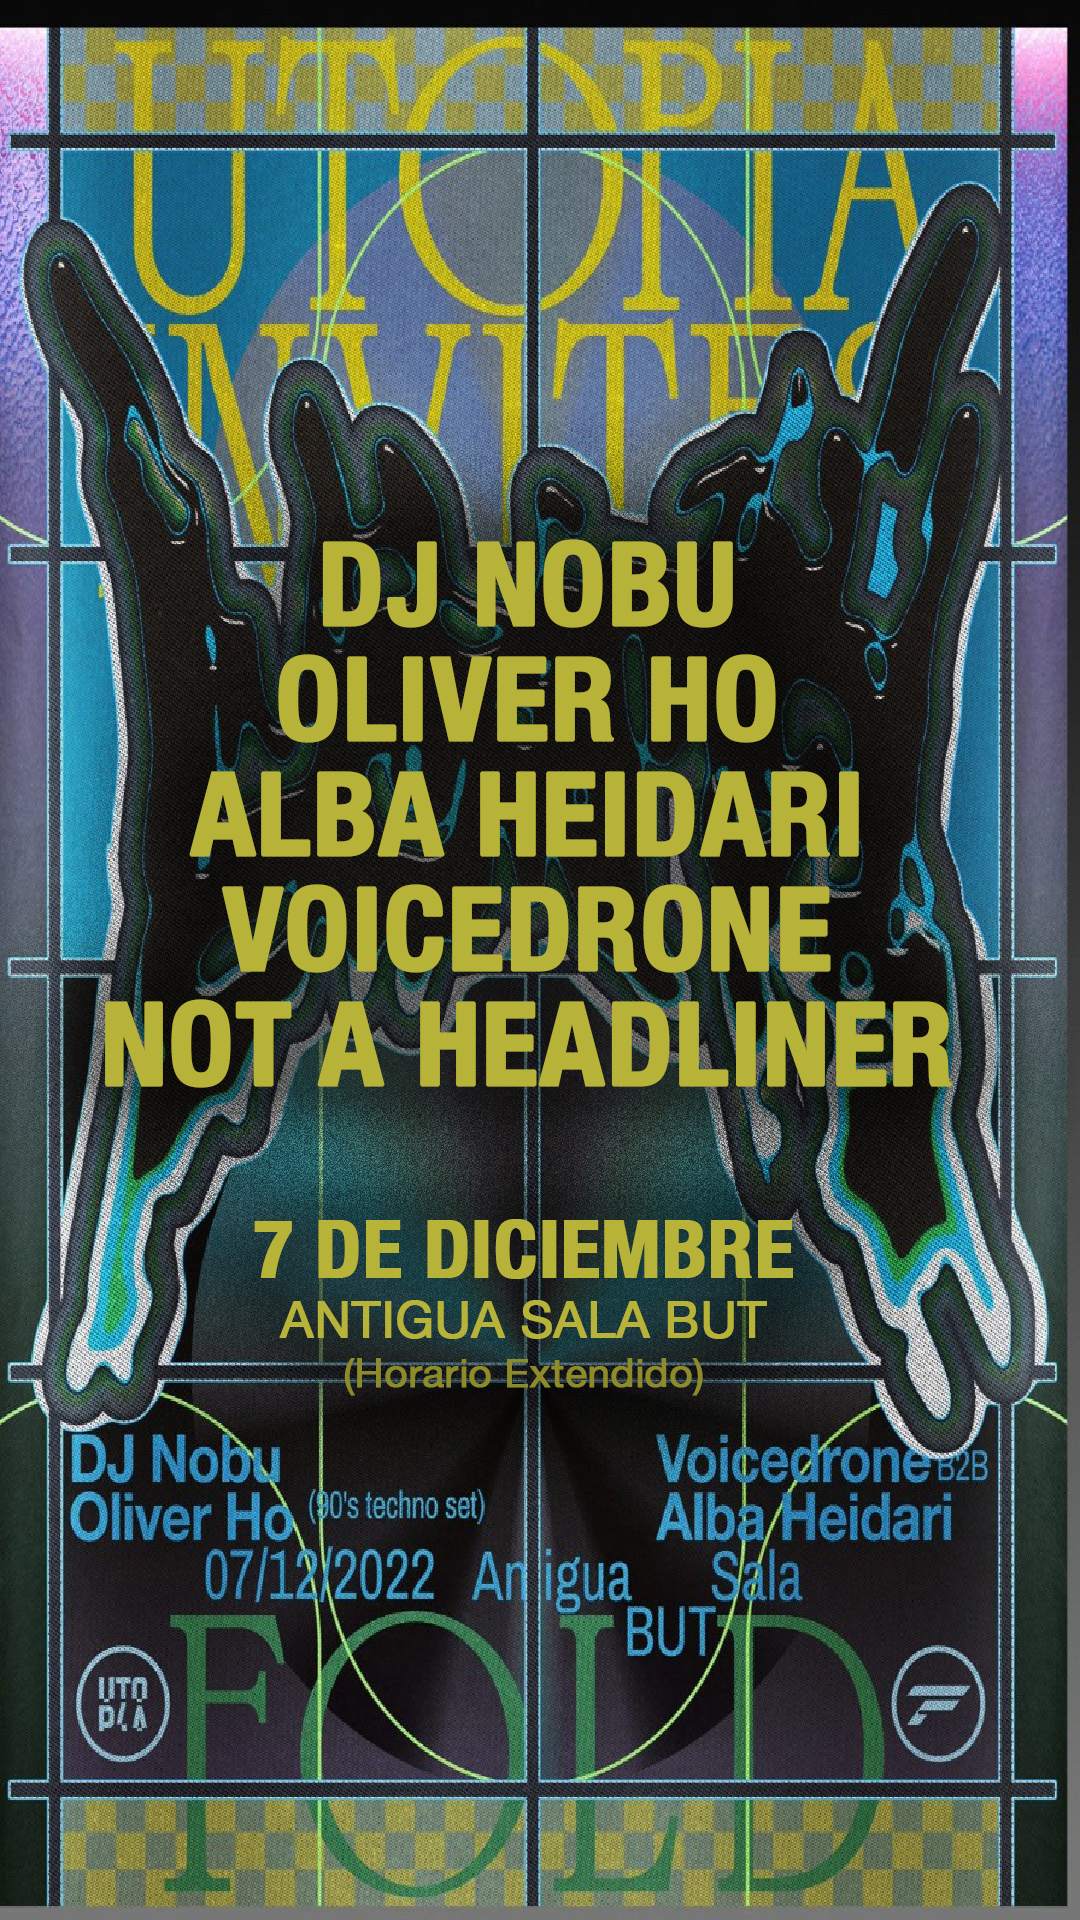 DJ Nobu / Oliver Ho / Not A Headliner / Voicedrone b2b Alba Heidari | UTOPIA invites FOLD - Página frontal